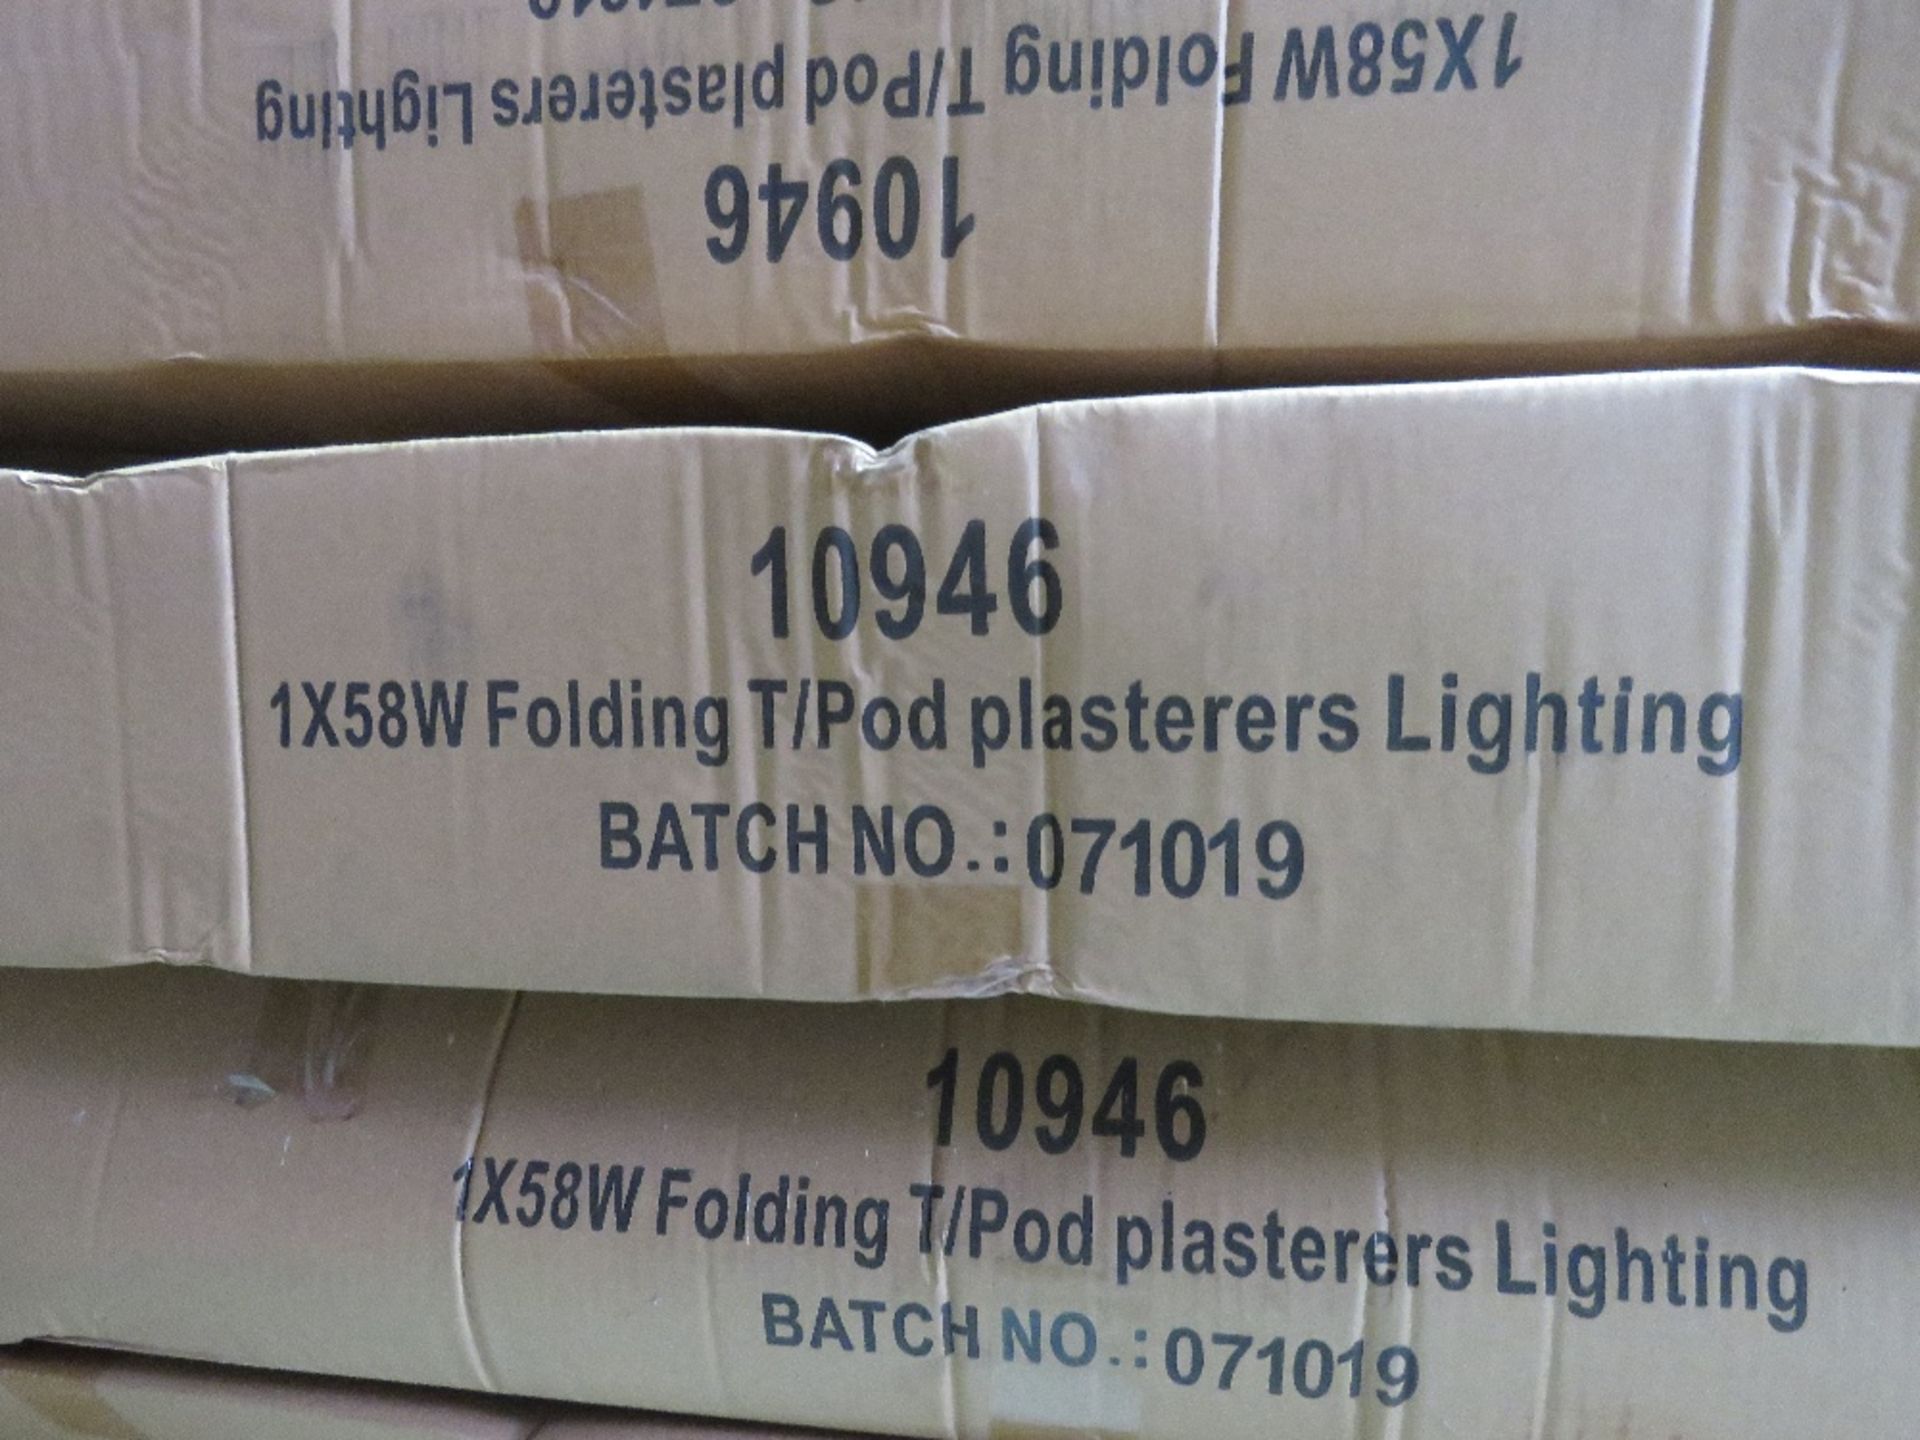 4 NO. 110V PLASTER LIGHTS, LITTLE USED - Image 3 of 3